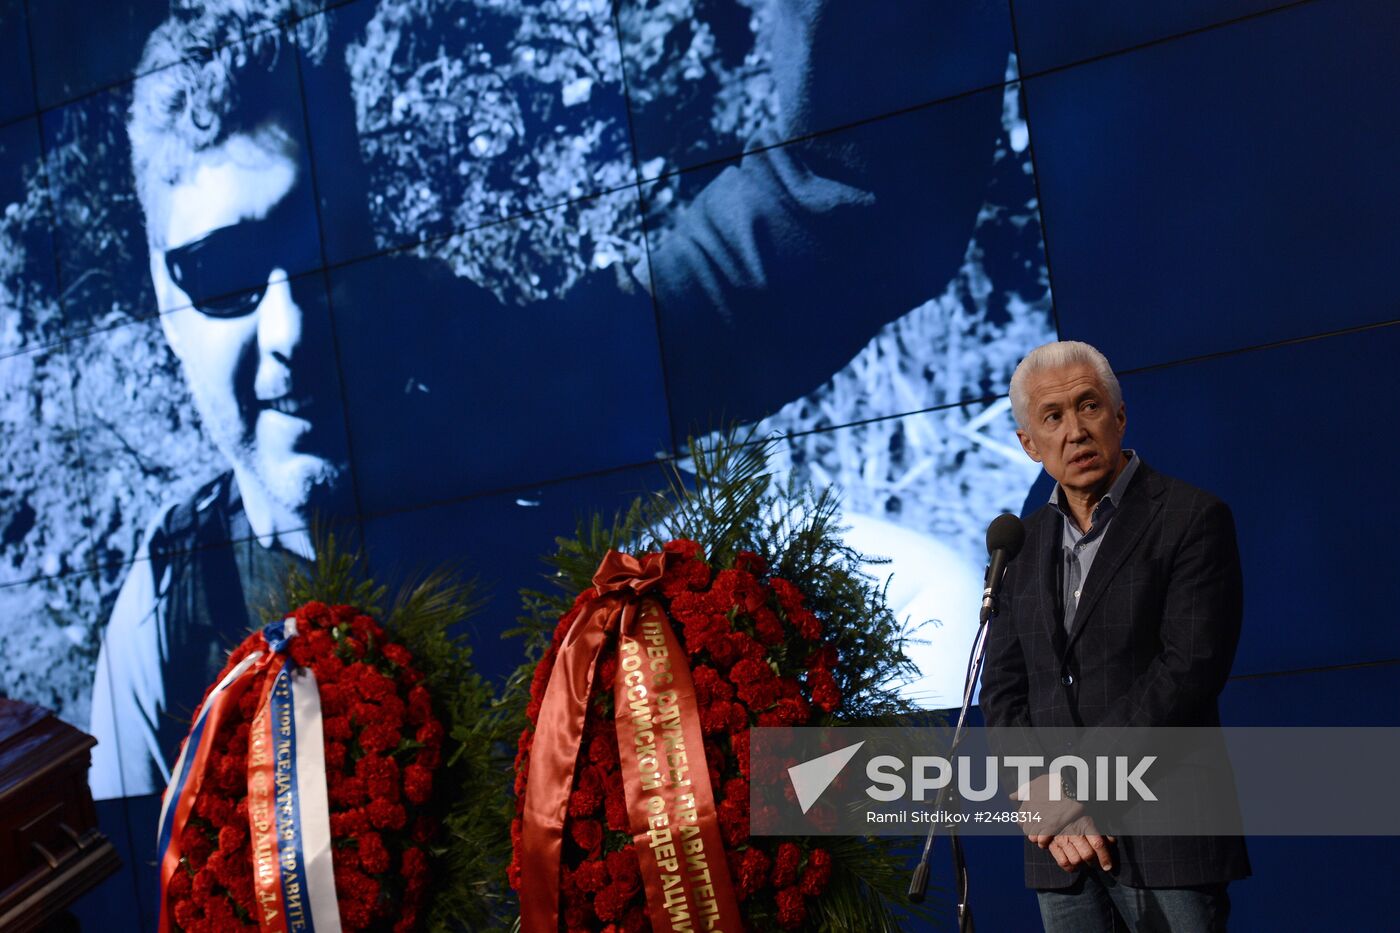 Mourning ceremony for Andrei Stenin at Rossiya Segodnya